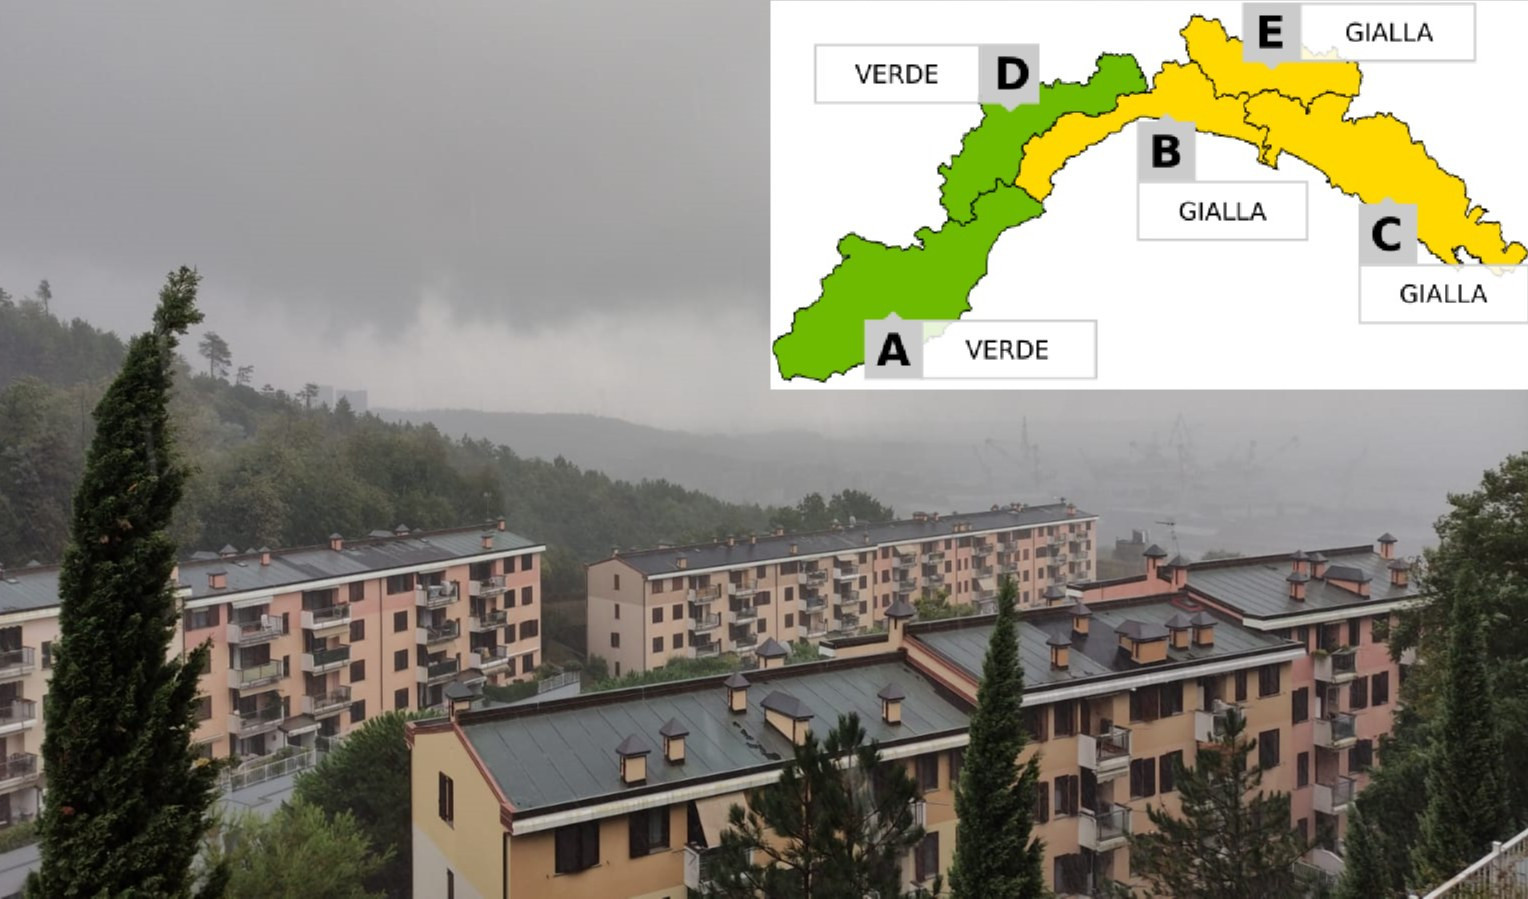 Torna la pioggia in Liguria, allerta meteo gialla per temporali